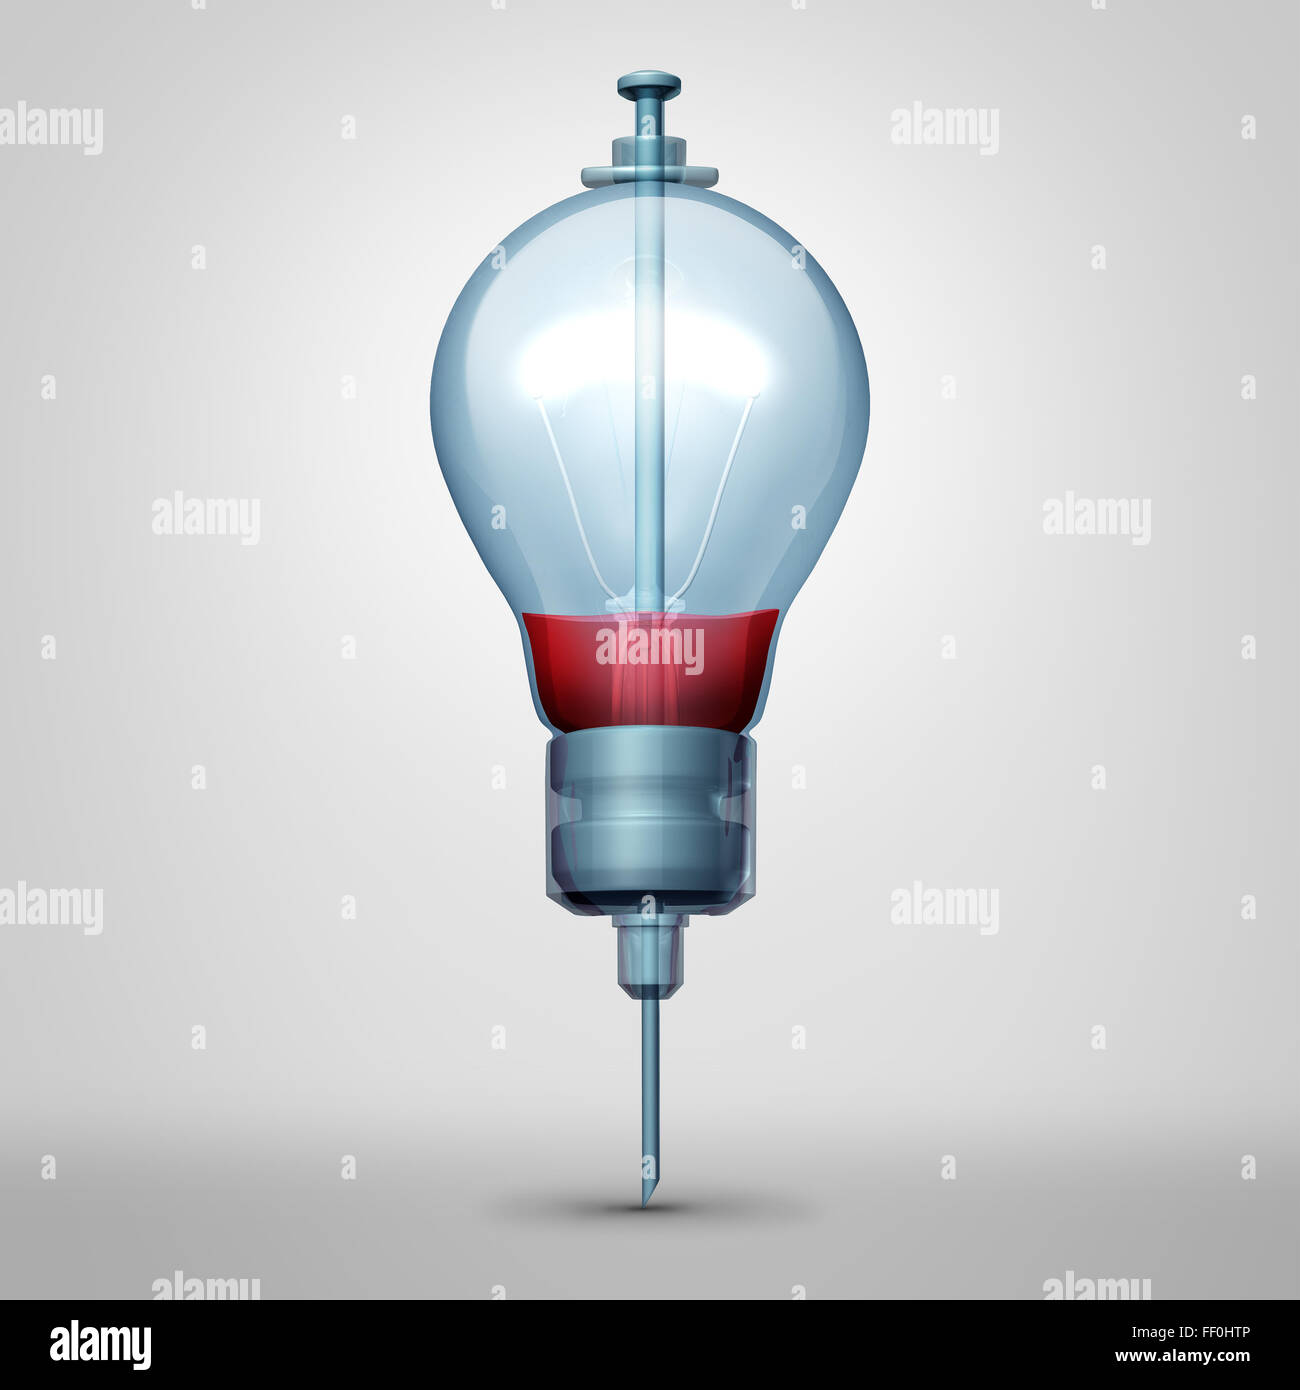 Medizinische Idee Konzept als eine Spritzennadel mit roter Flüssigkeit im Inneren geformt wie eine Glühbirne oder Glühlampe Symbol als kreative Medizin Metapher für Therapie oder Blutspende oder intelligente Krankenhaus Pflege-Symbol. Stockfoto